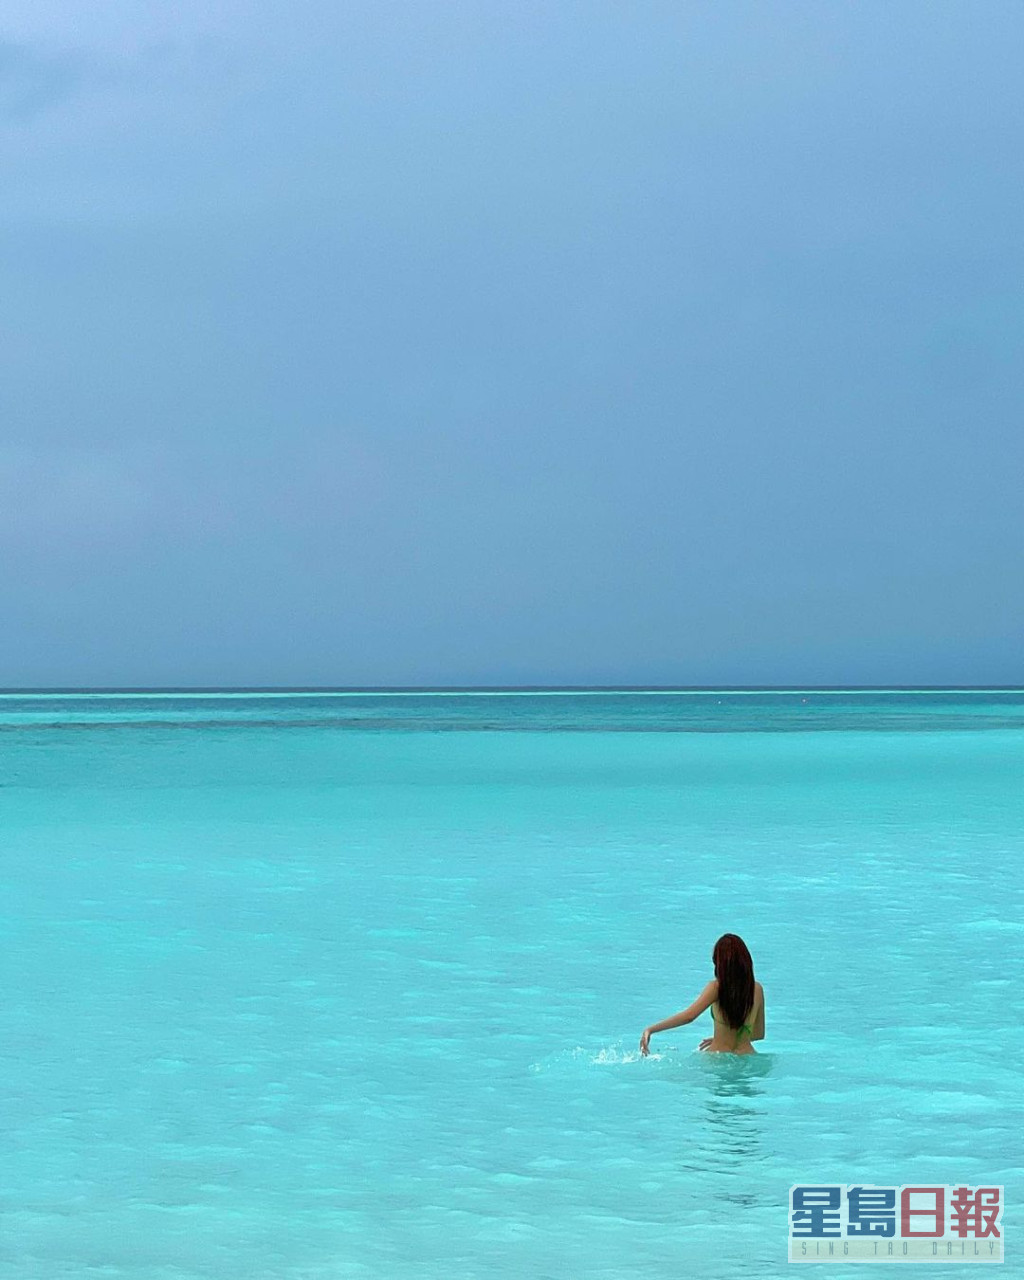 日前任晴佳都有分享过于马尔代夫拍的三点式泳照，不过就唔系好睇得清佢个人。